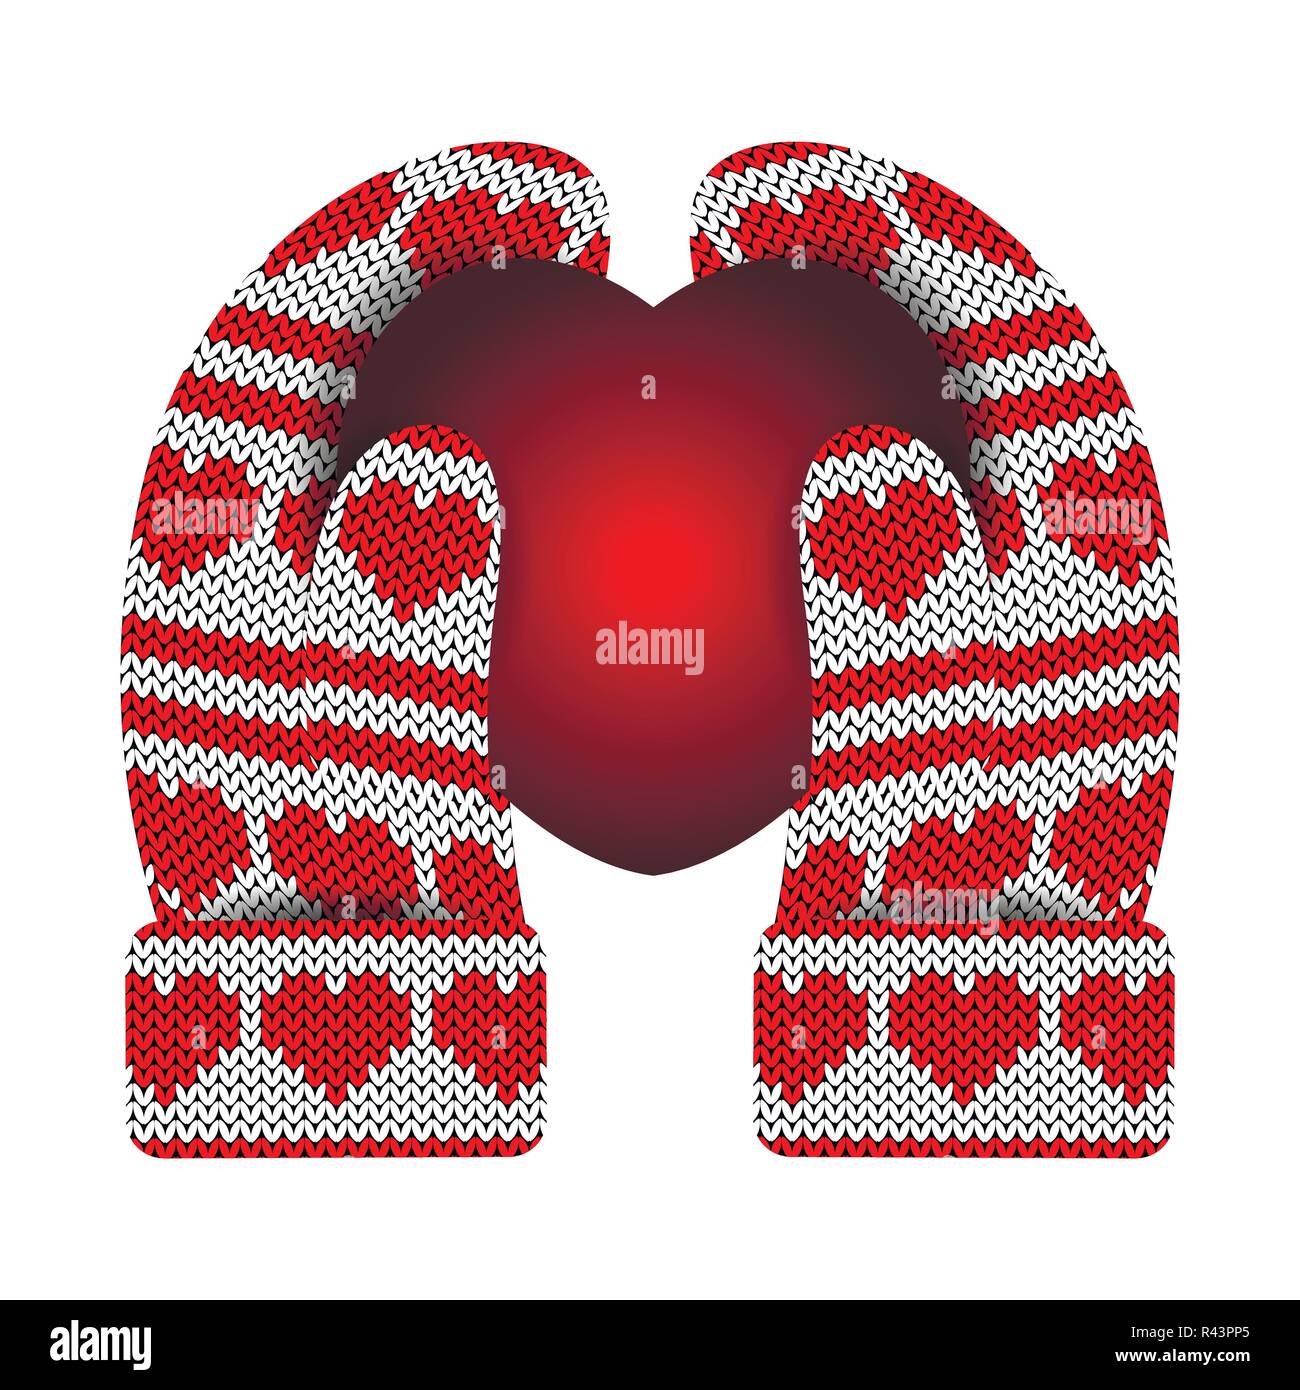 Valentines Day. Dans les mains des mitaines tricotées tenir un cœur lumineux. Modèle de tricot de coeurs et de rayures. Blanc et rouge. Illustration de Vecteur